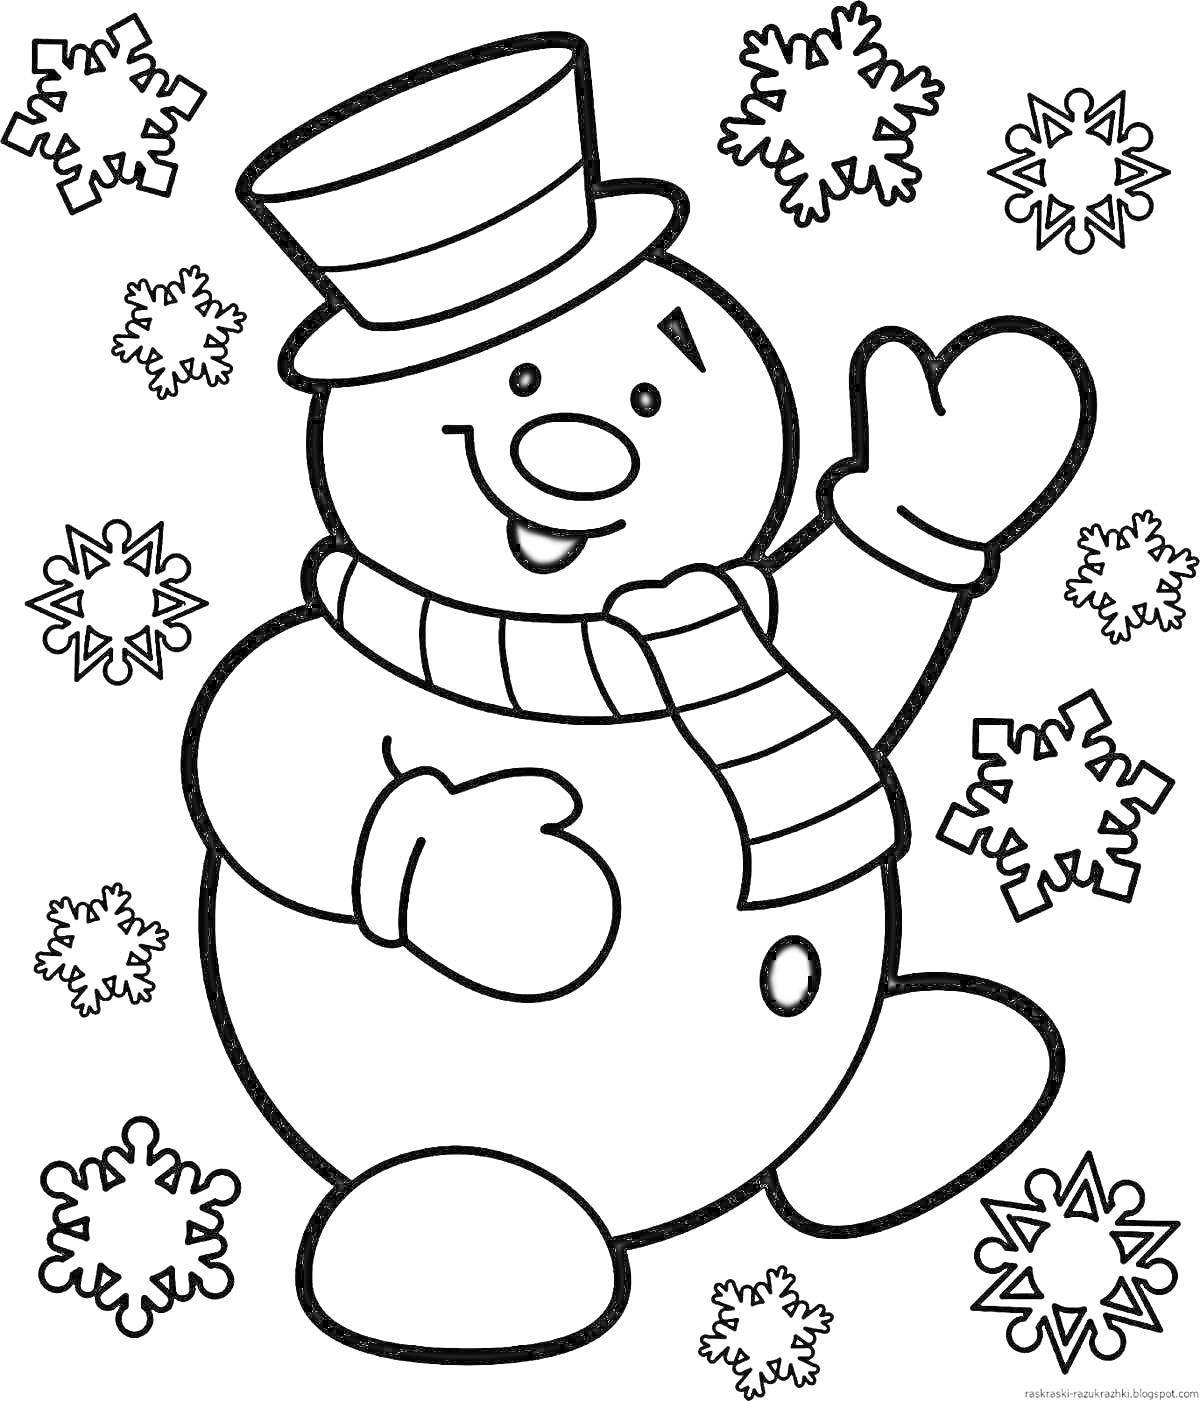 Раскраска Снеговик в шляпе с шарфом и снежинками вокруг